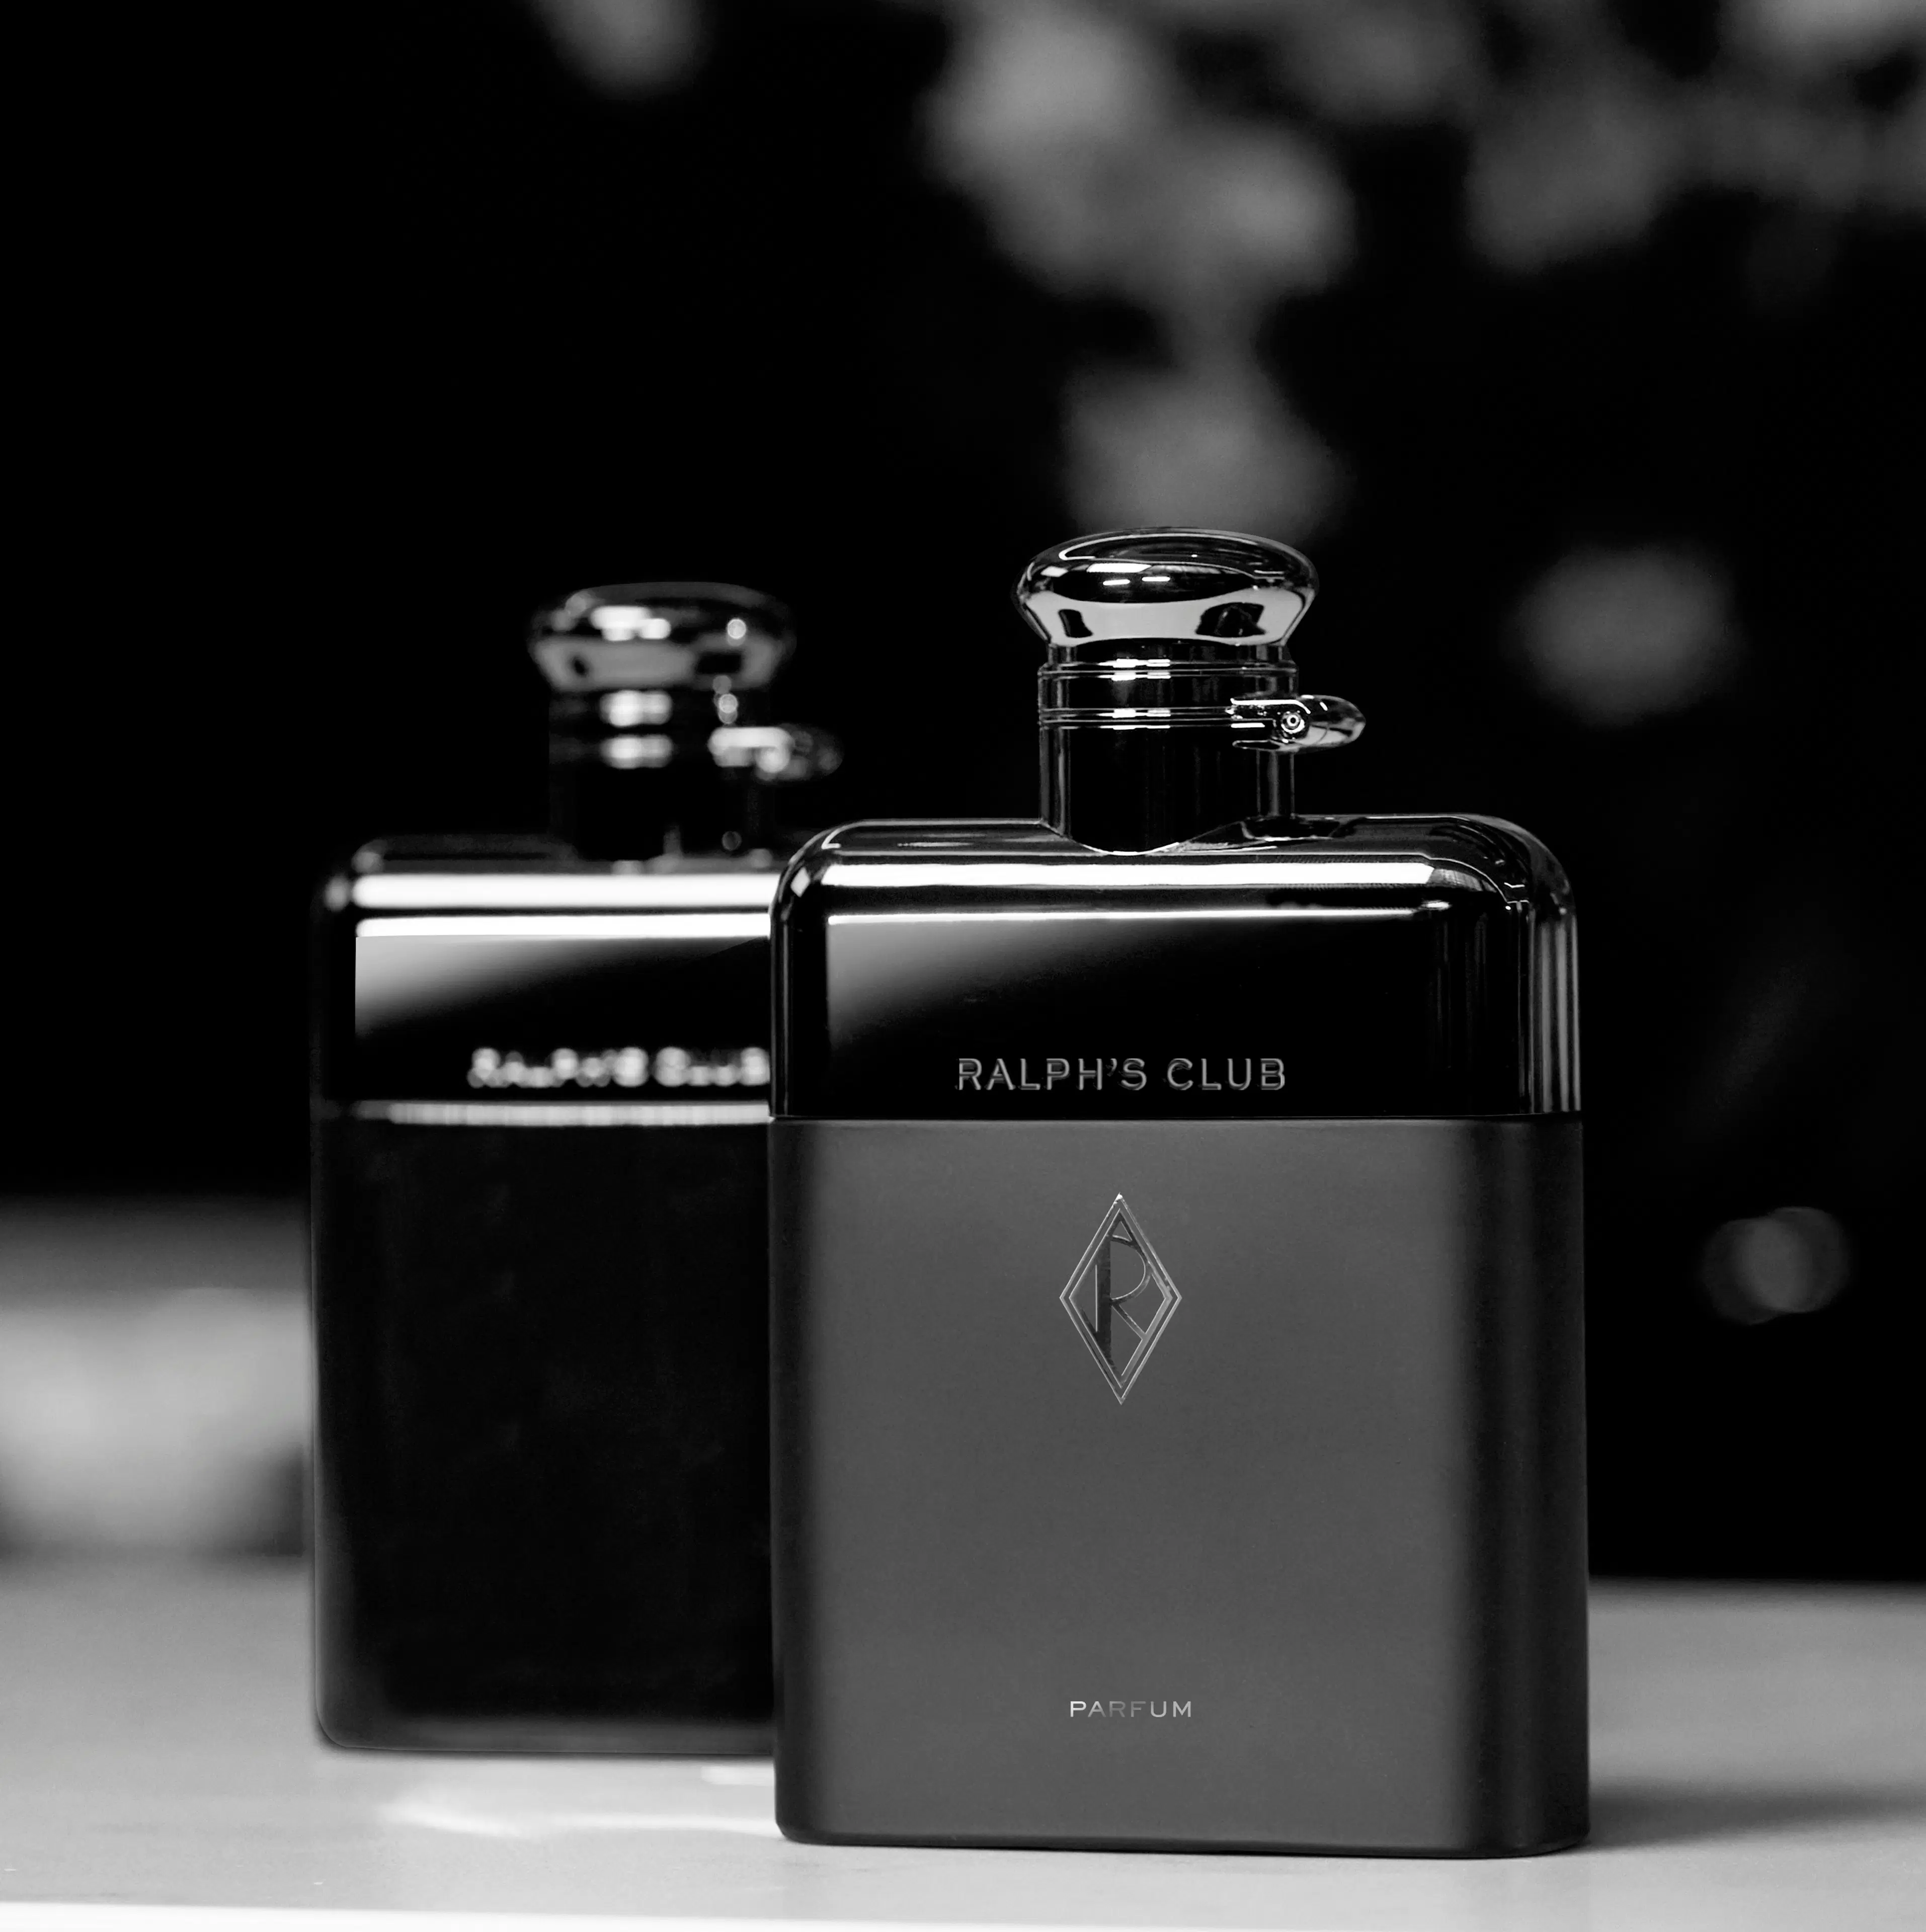 Ralph Lauren Ralph's Club Parfum tuoksu 50 ml